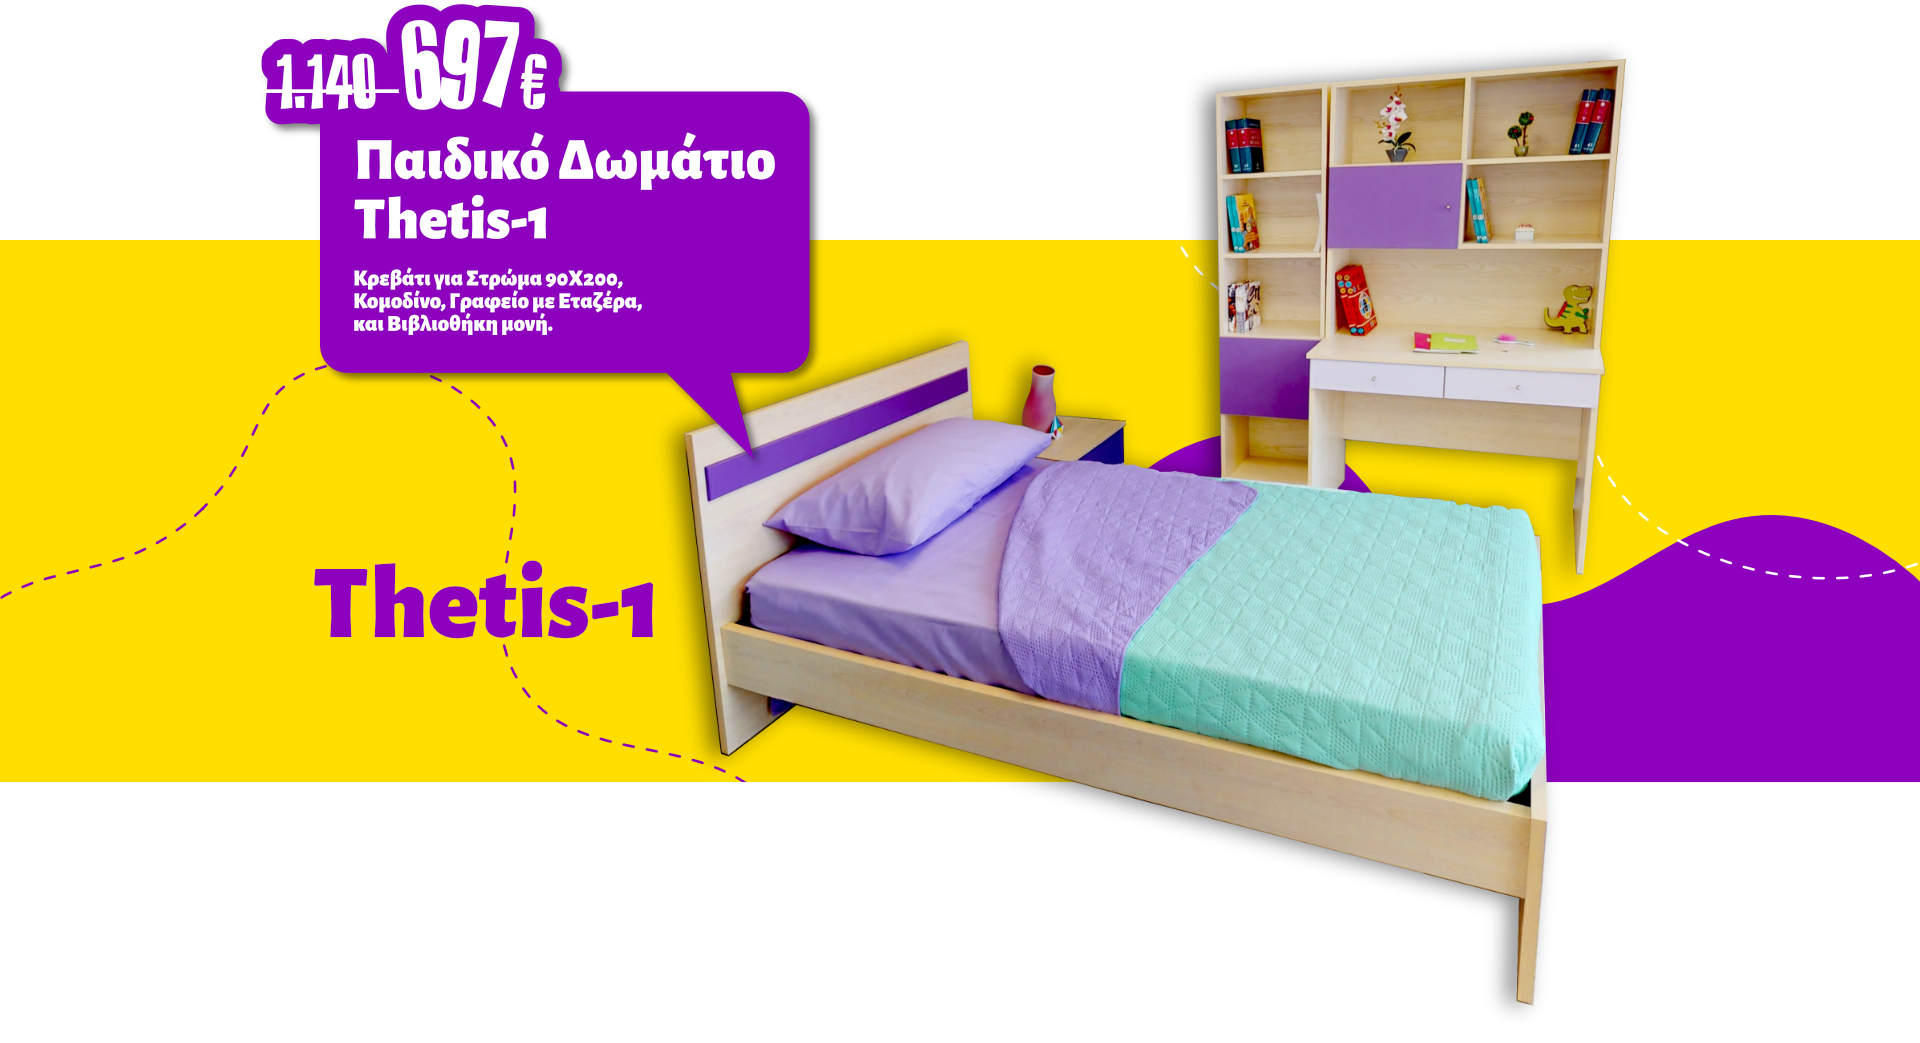 Προσφορά Παιδικό Δωμάτιο Thetis 1 - Κρεβάτι για Στρώμα 90Χ200, Κομοδίνο, Γραφείο με Εταζέρα, και Βιβλιοθήκη μονή, από 1.149€ - 697€.